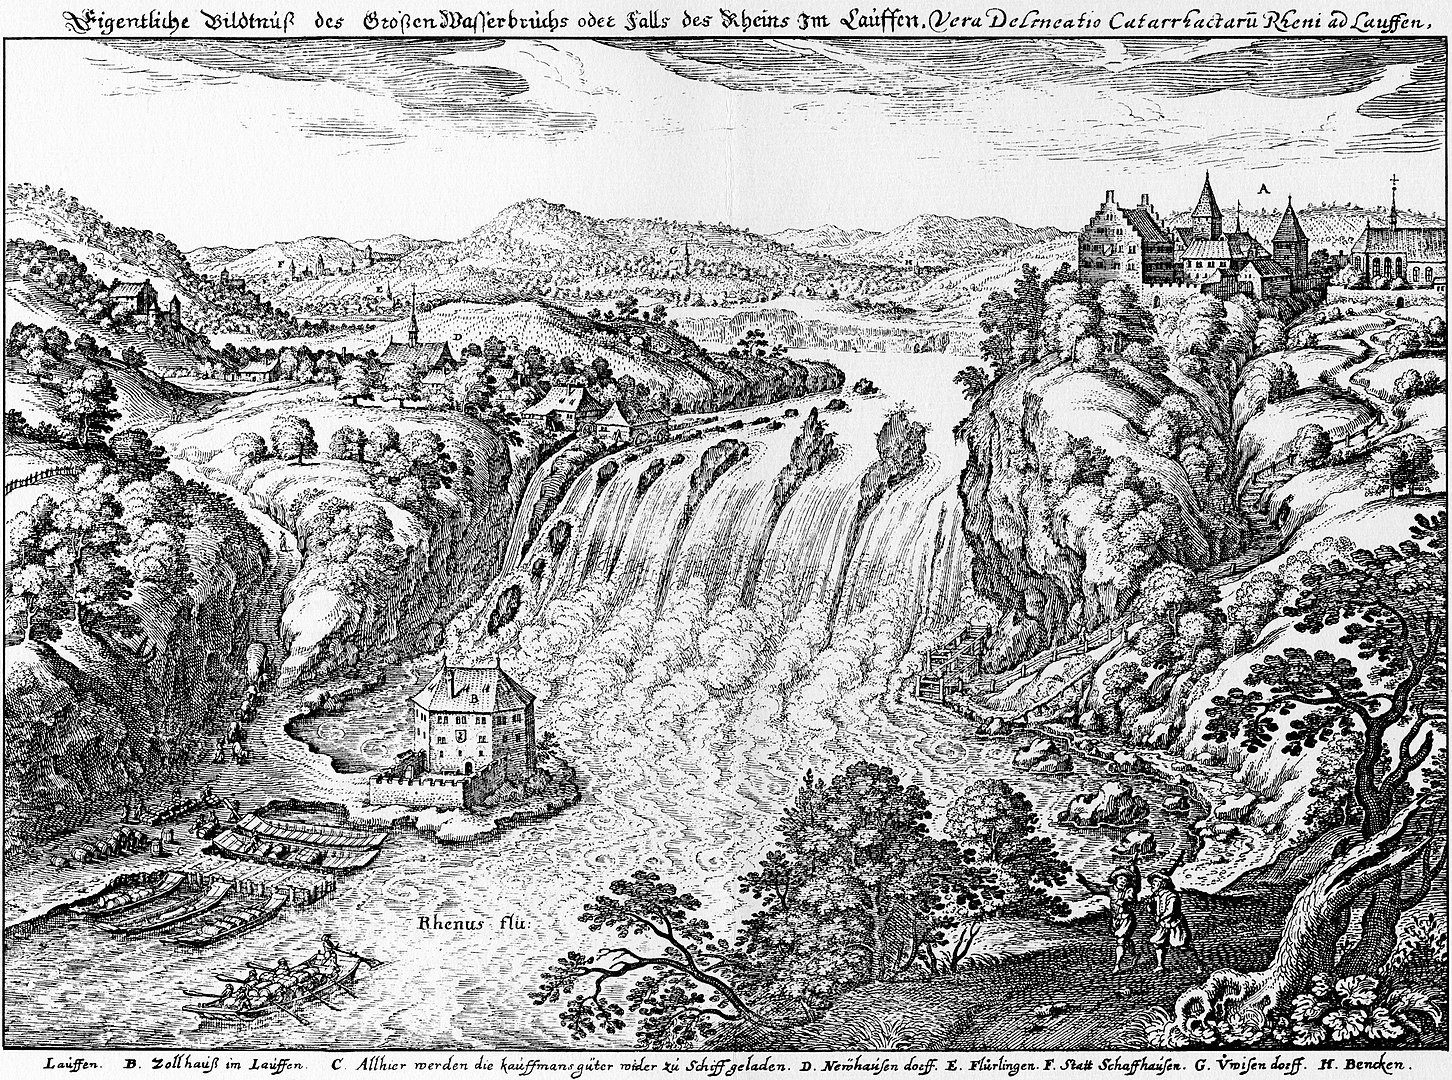 Les chutes du Rhin et le château de Laufen vers 1642. Cette construction représente depuis plus de 1000 ans l'image de la rive gauche du Rhin, juste au-dessus des chutes du Rhin.